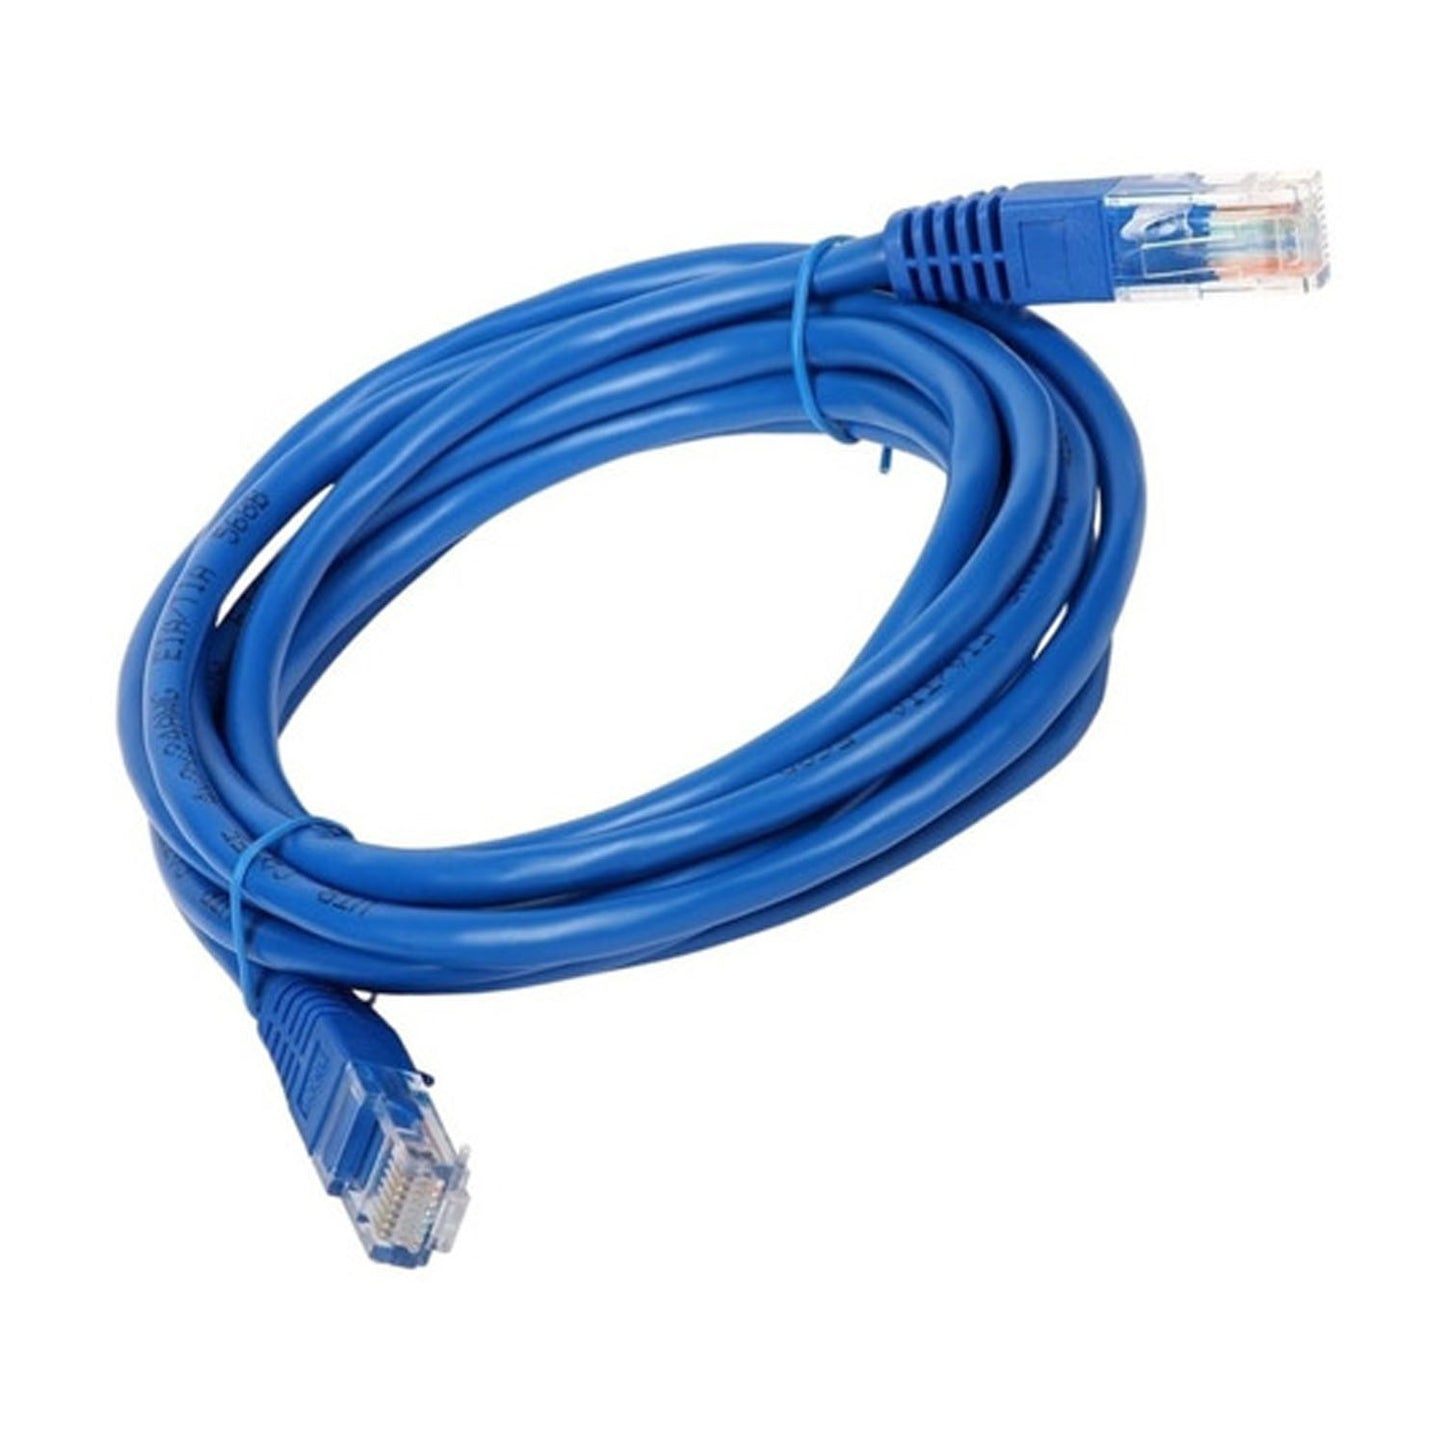 Cable De Red Cat6a 5 Metros Mc-3005 Azul - Crazygames